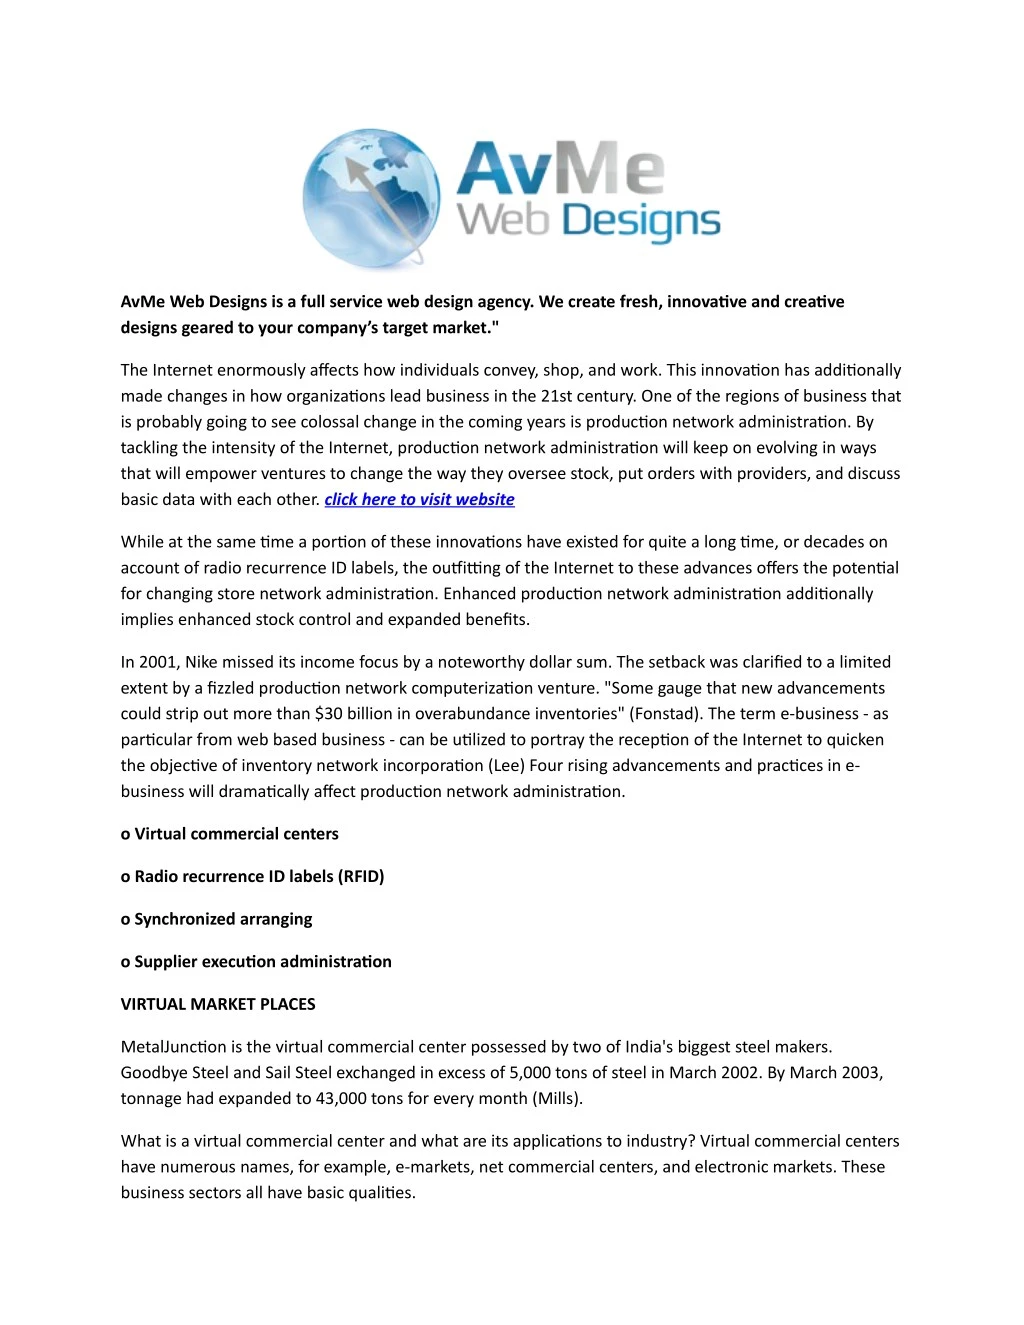 avme web designs is a full service web design